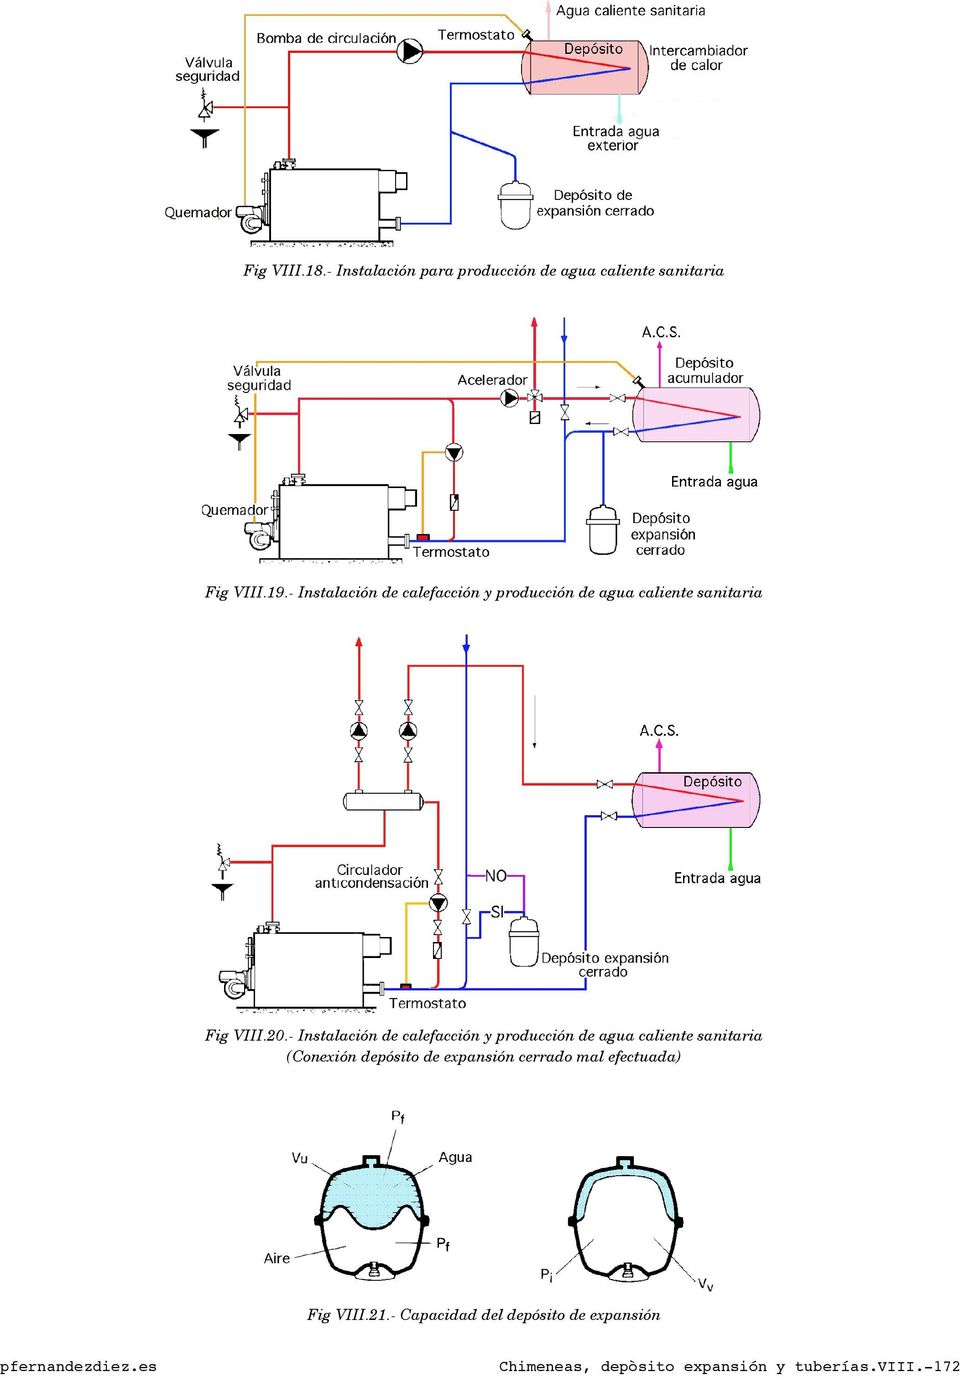 - Instalación de calefacción y producción de agua caliente sanitaria (Conexión depósito de